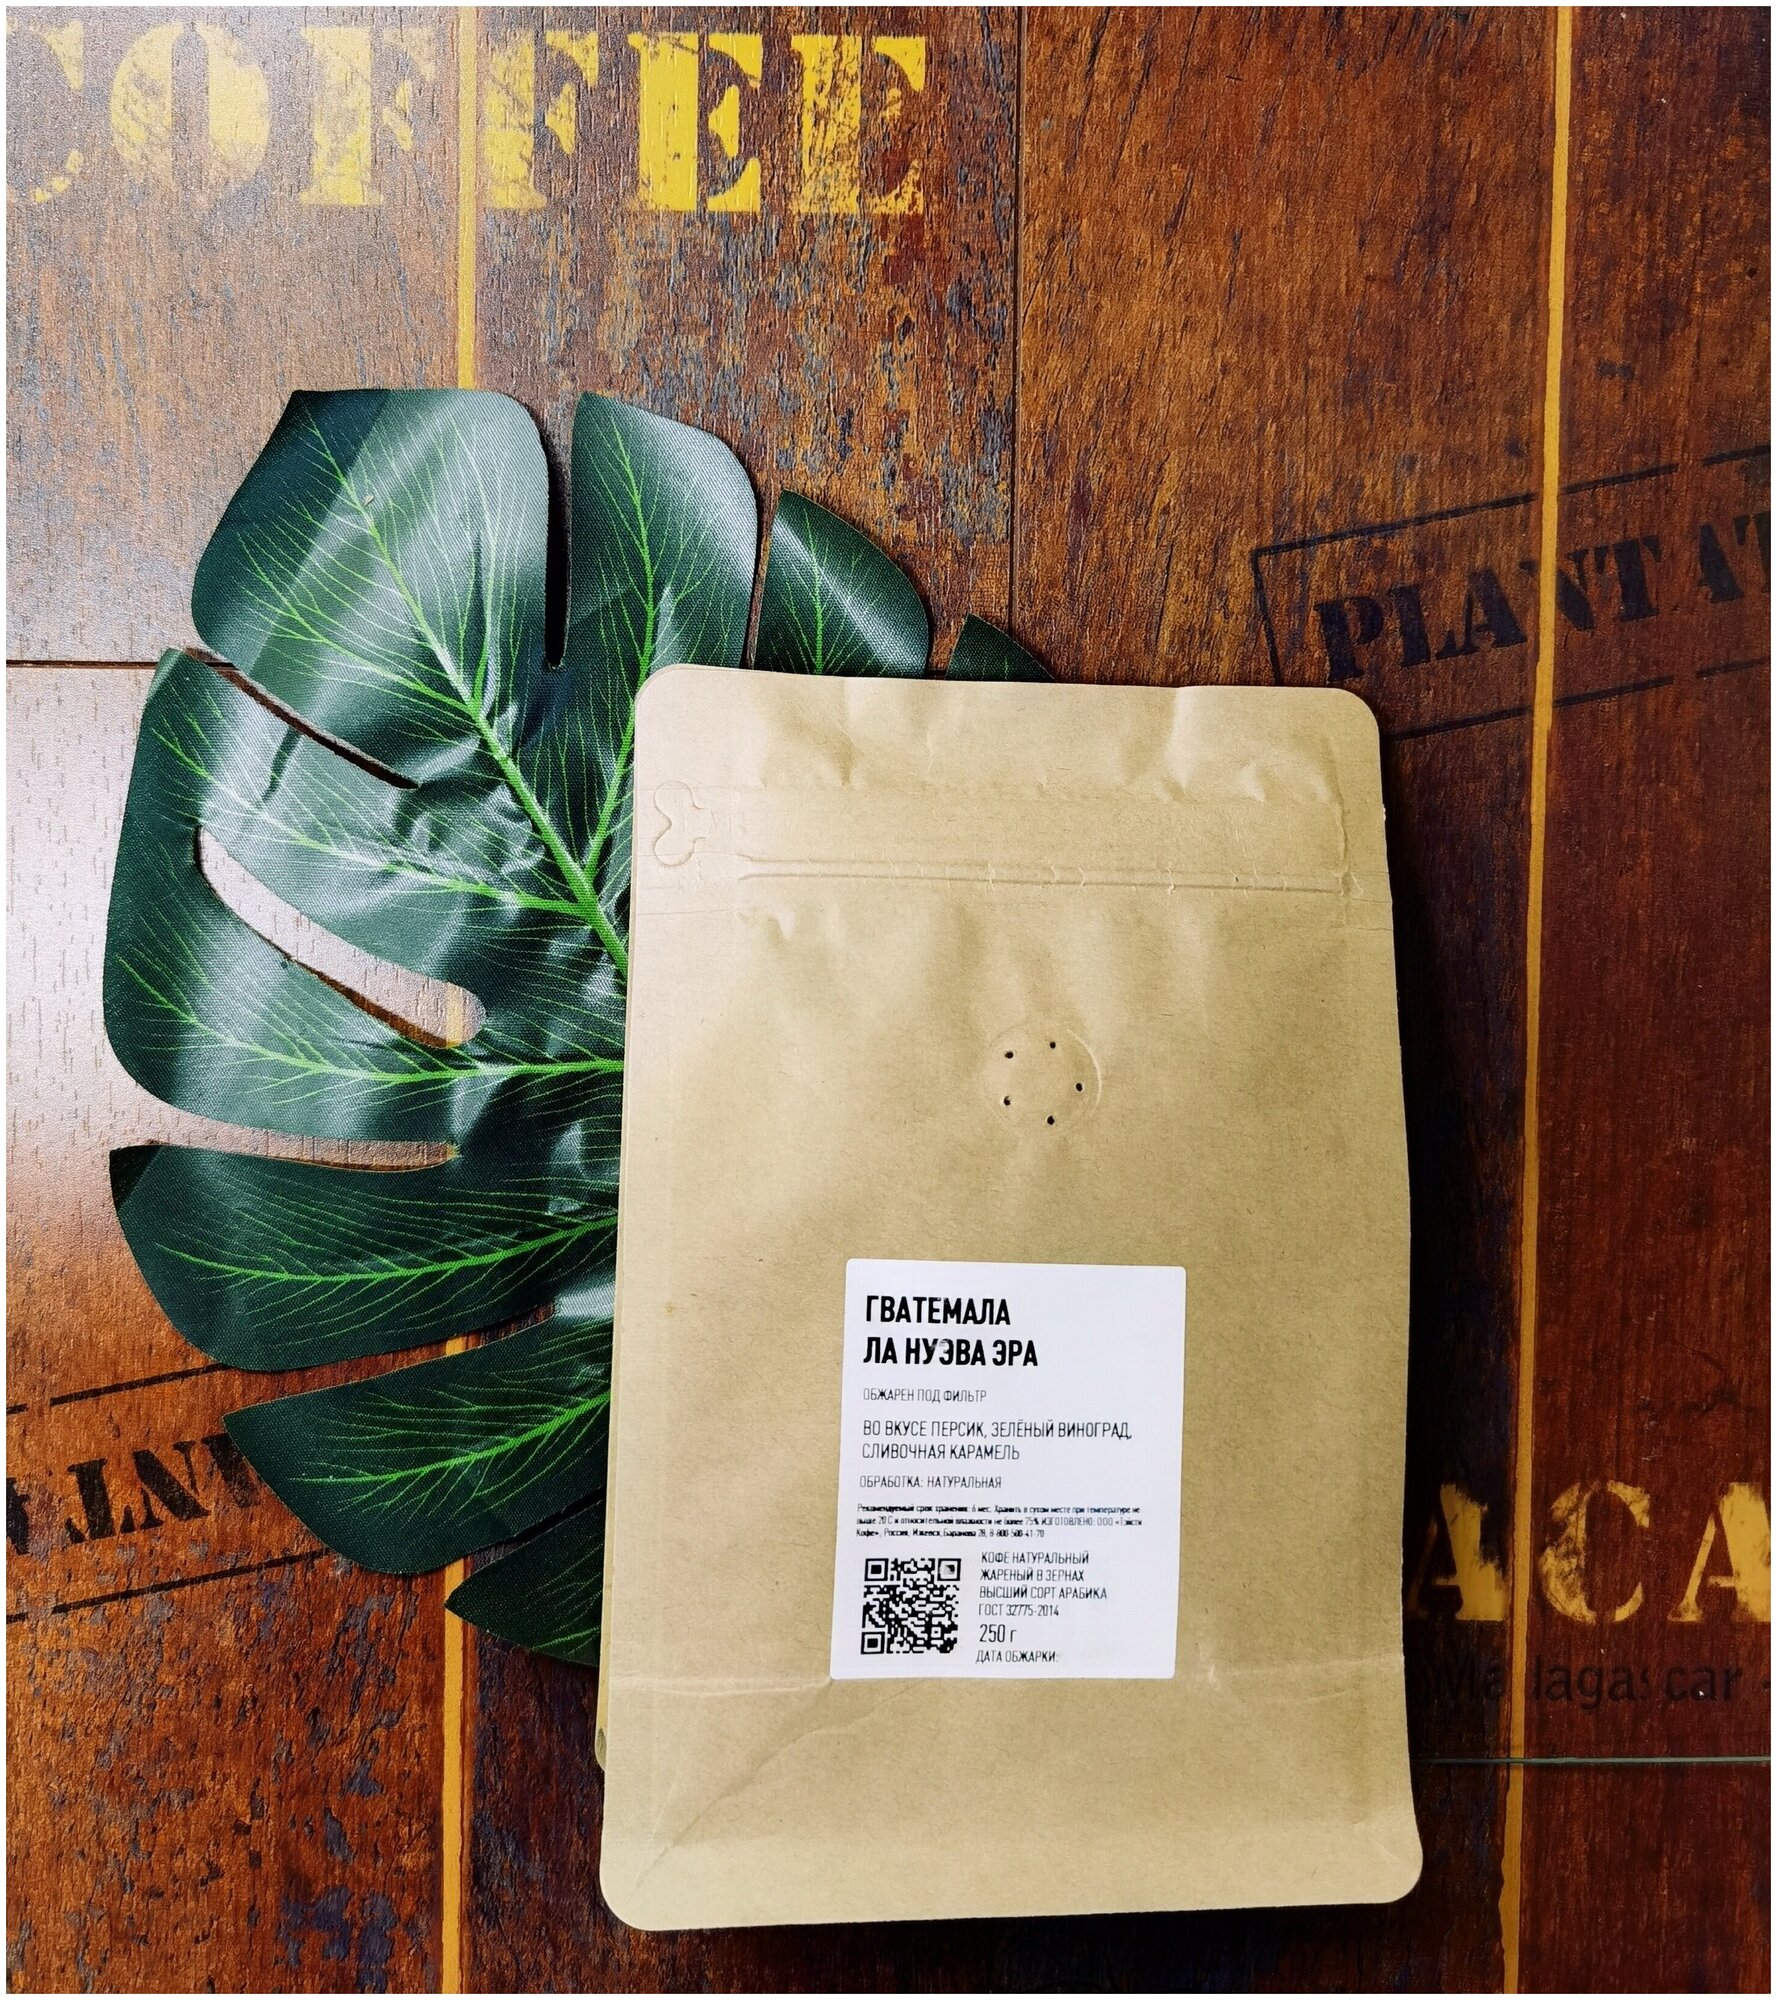 Кофе в зернах Гватемала Ла Нуэва Эра (100% арабика, высший сорт), 250 гр. - фотография № 1